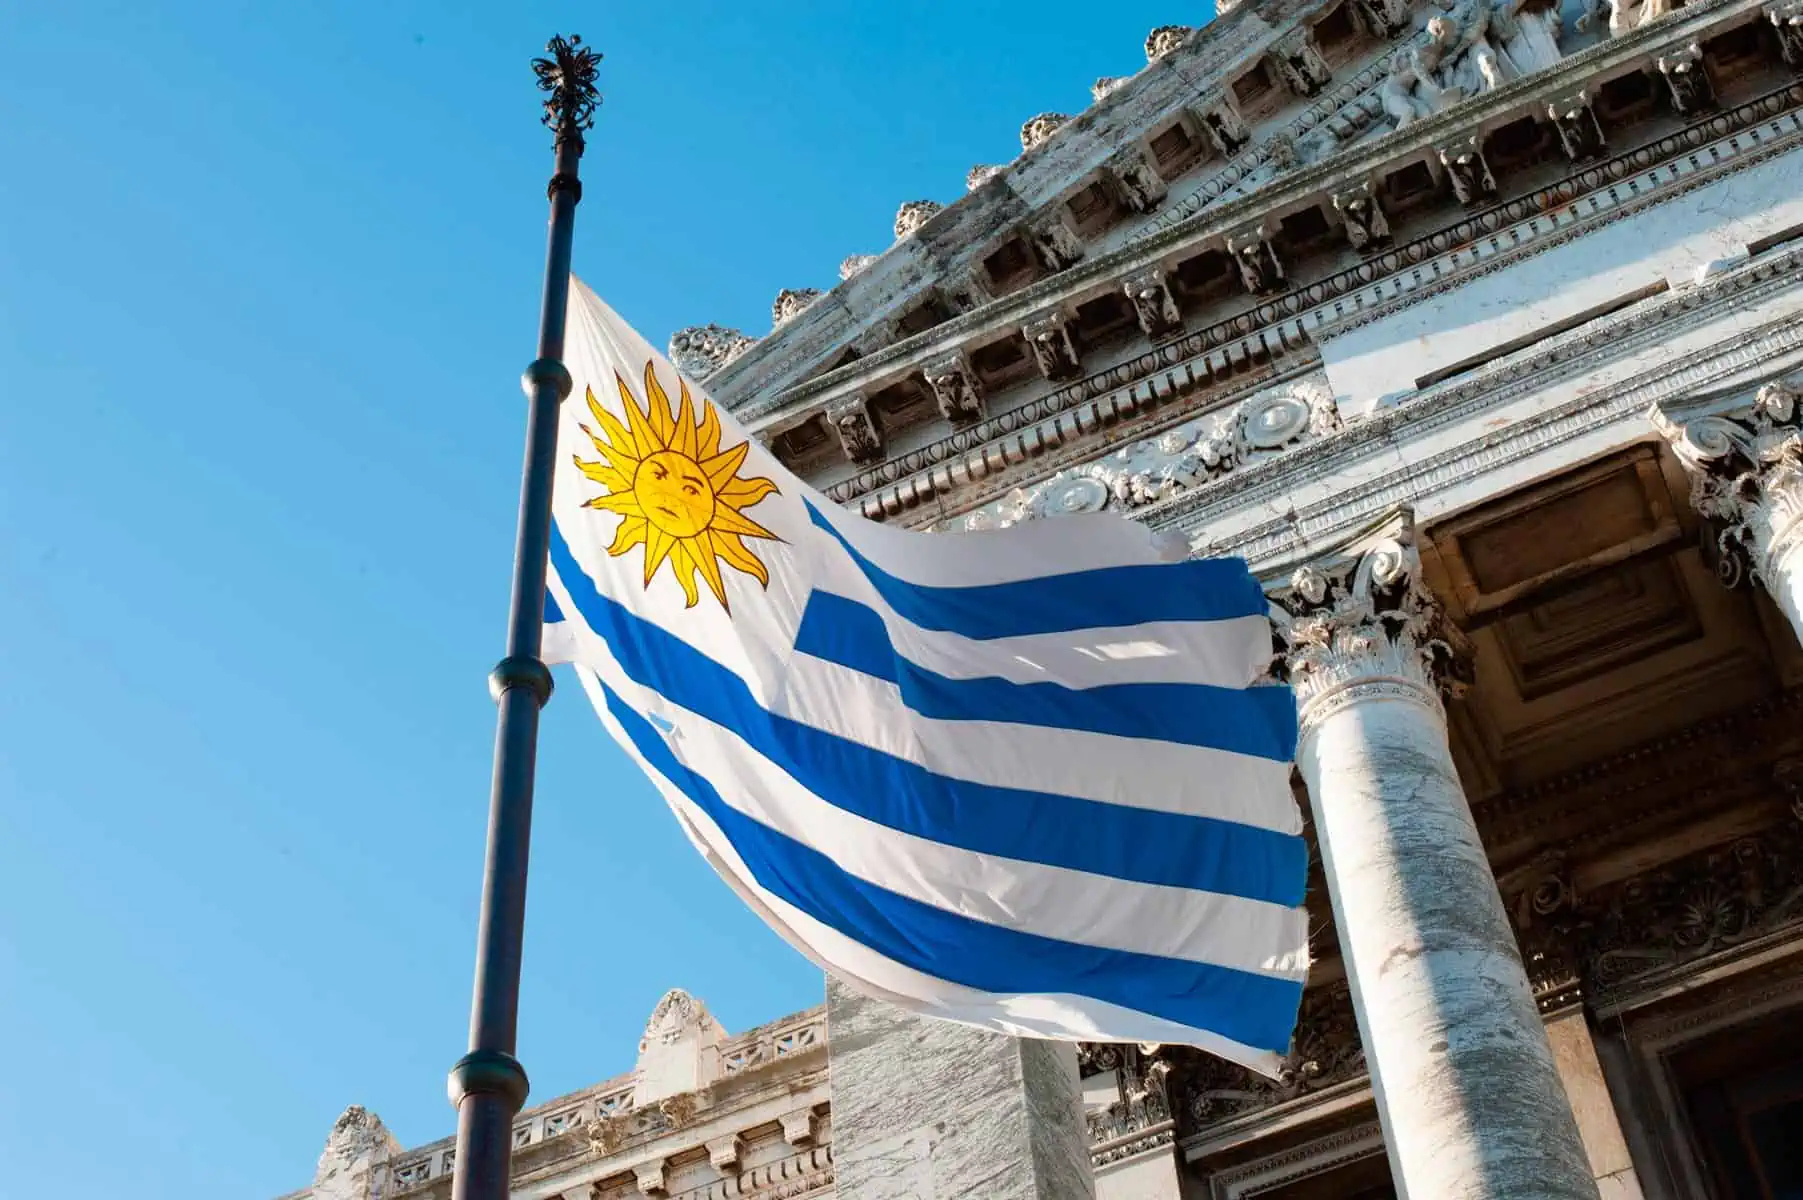 Nuevos Requisitos para Residencia Permanente en Uruguay Colocan a Cubanos en un Limbo Migratorio